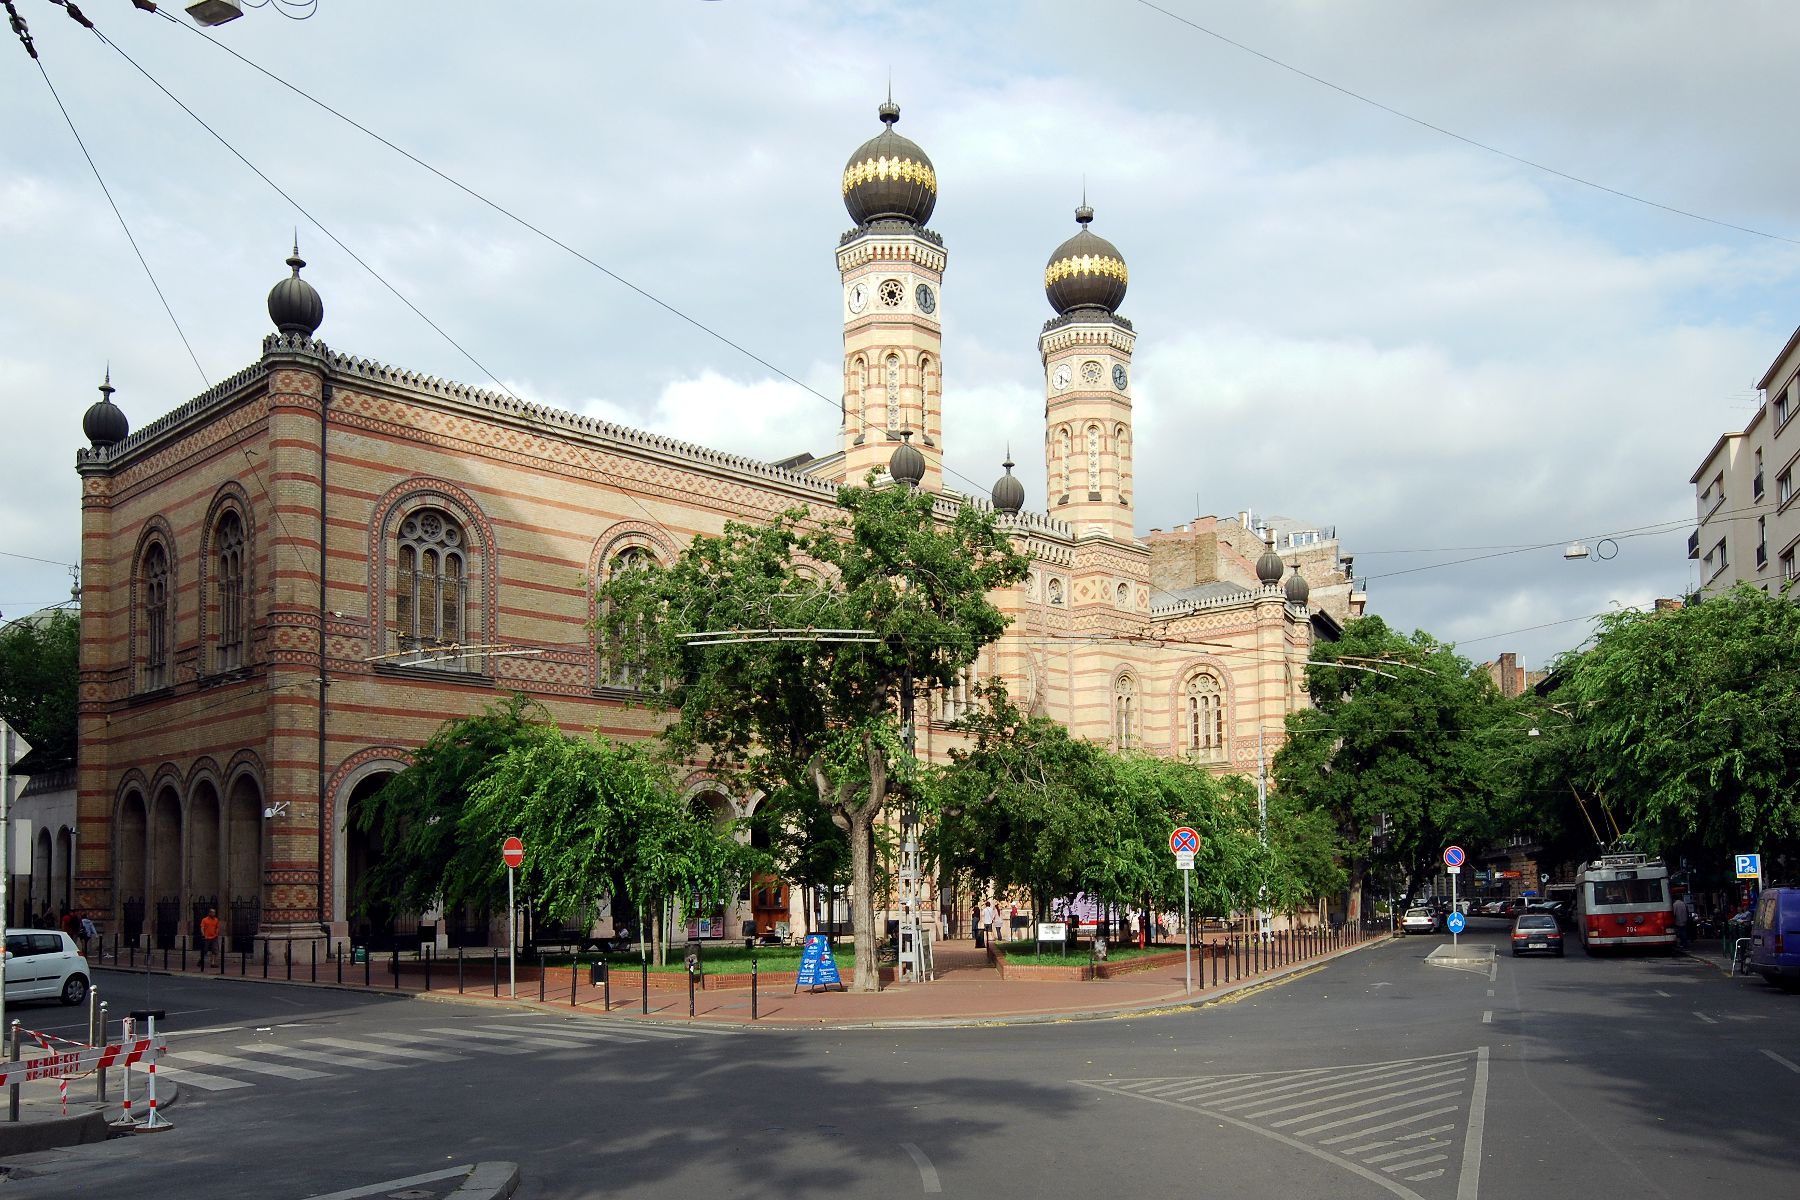 zsinagoga - budapest-travelnet.jpg